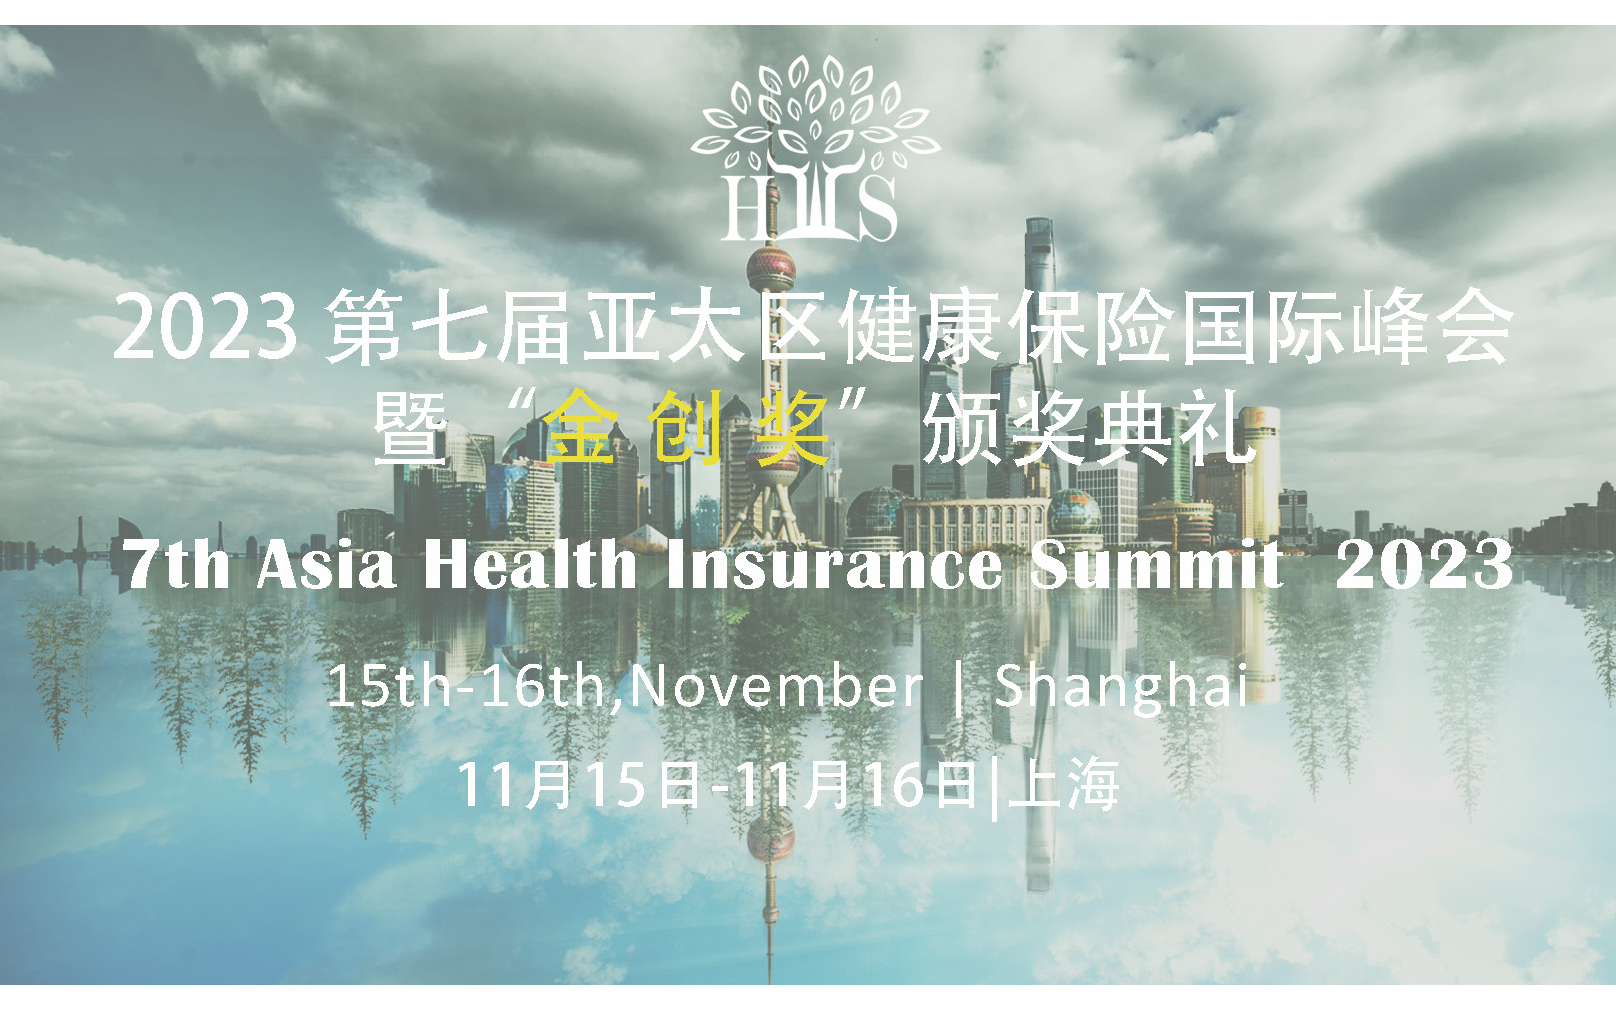 2023 第七届亚太区健康险国际峰会暨“金创奖”颁奖典礼